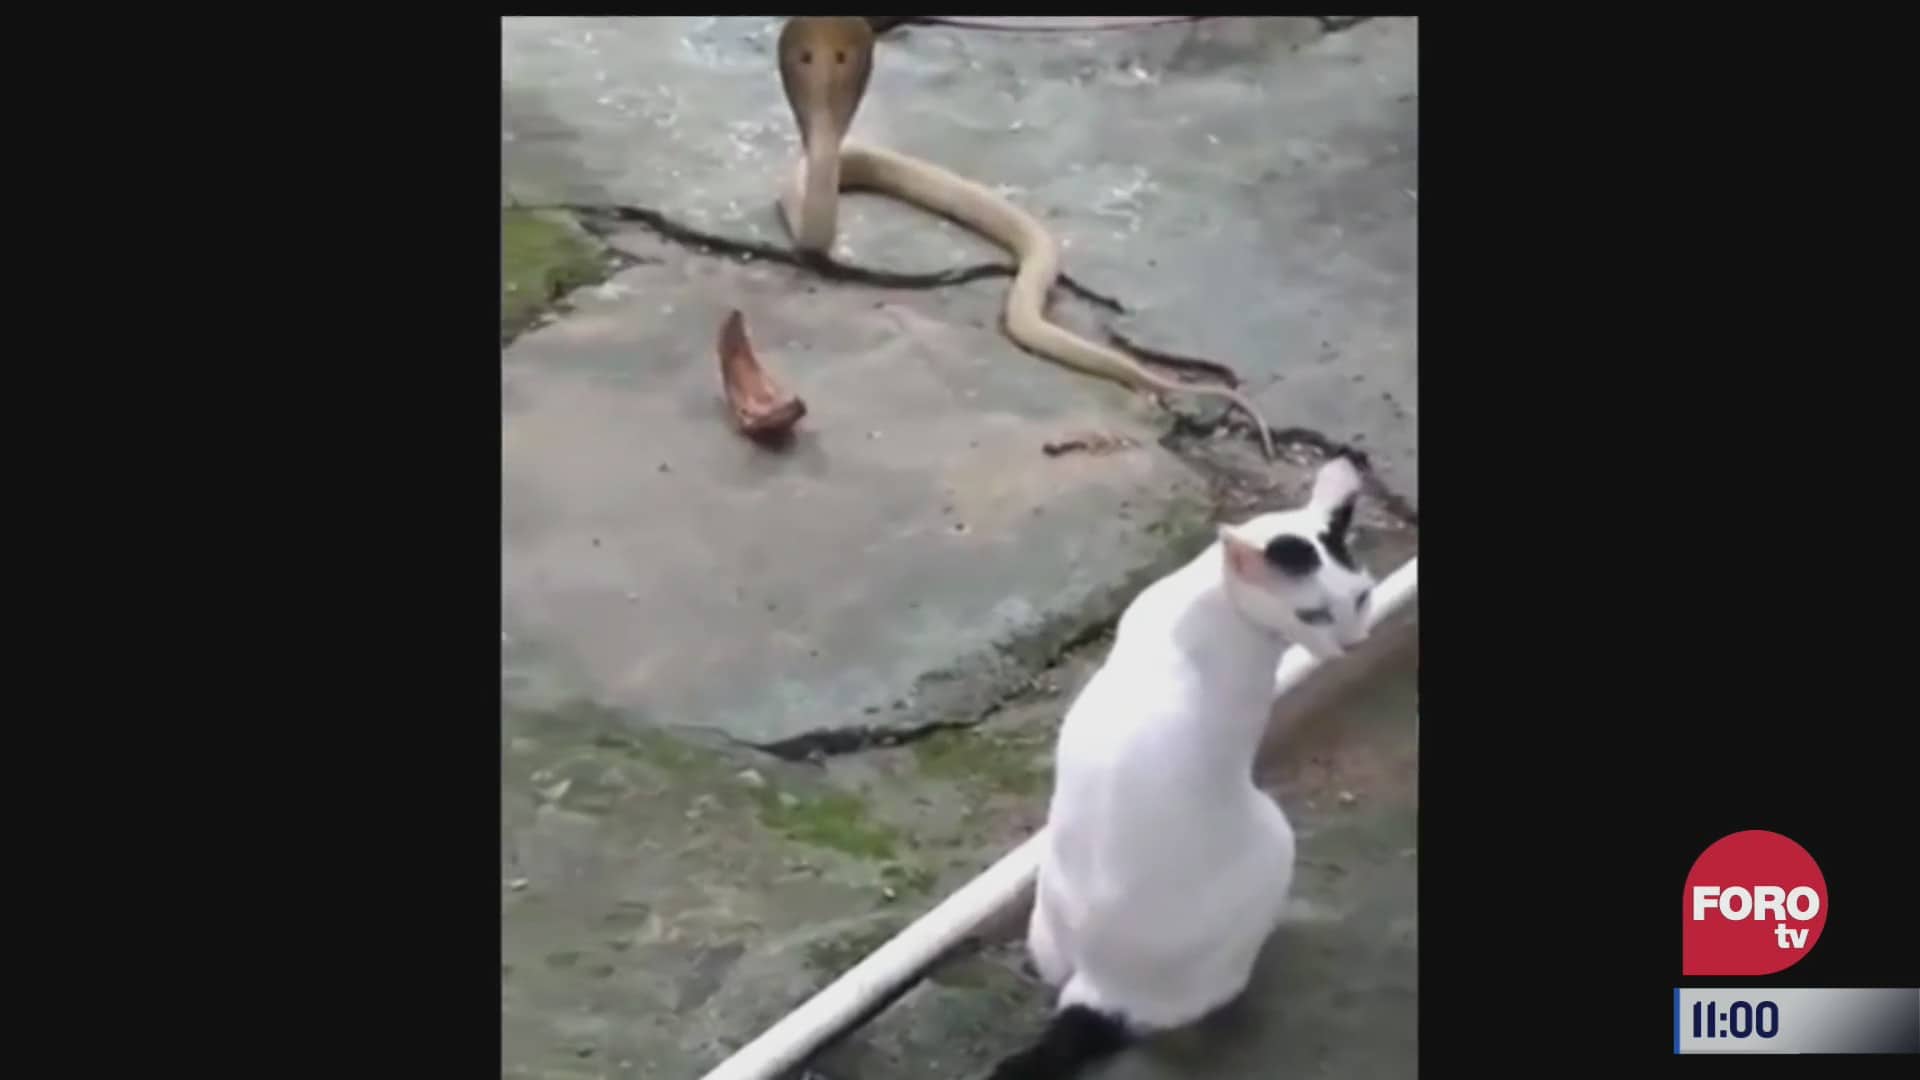 gato enfrenta a una cobra y salva a su dueno